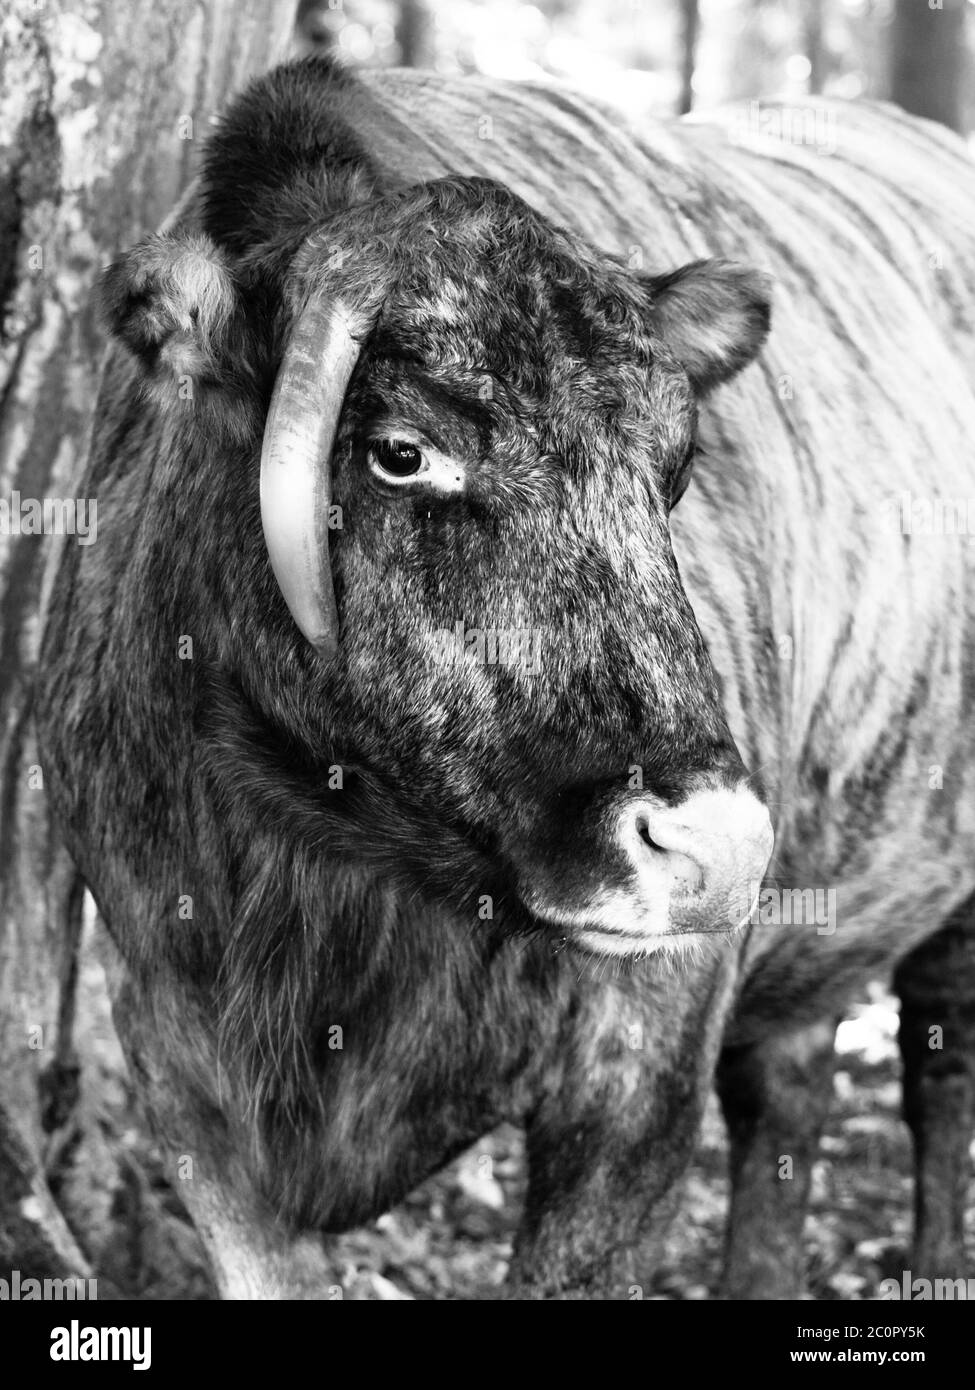 Zubron - ibrido di bestiame domestico e bisonte europeo, o wisent. Immagine in bianco e nero. Foto Stock